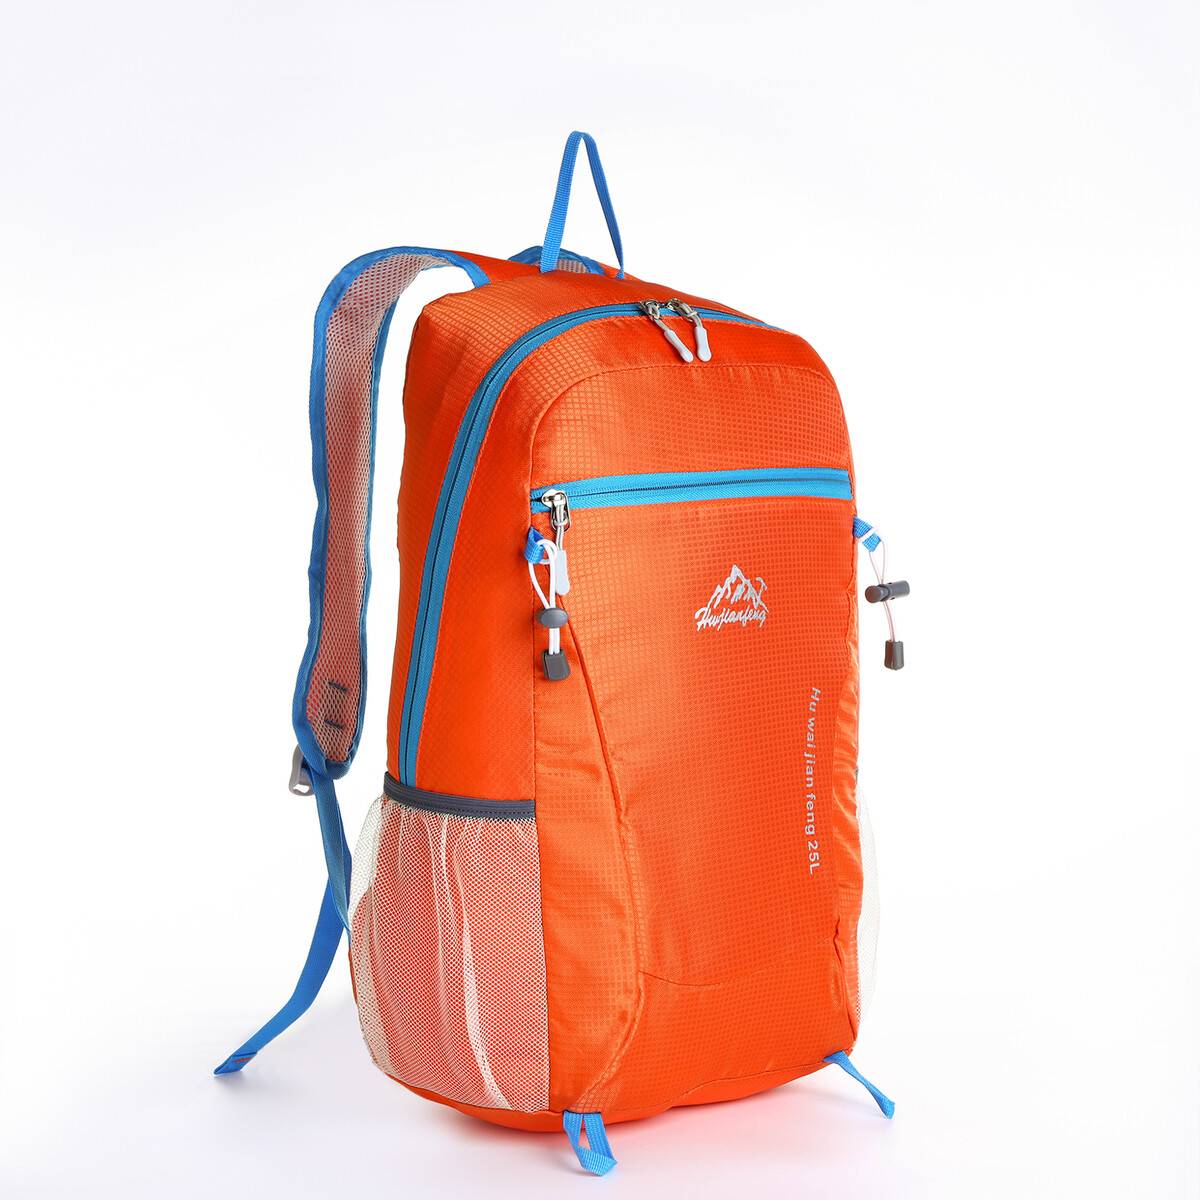 Рюкзак туристический 25л, складной, водонепроницаемый, на молнии, 4 кармана, цвет оранжевый рюкзак складной турист 25 л 28 16 45 отд на молнии 2 н к 2 б к водонепрониц оранжевый 10189